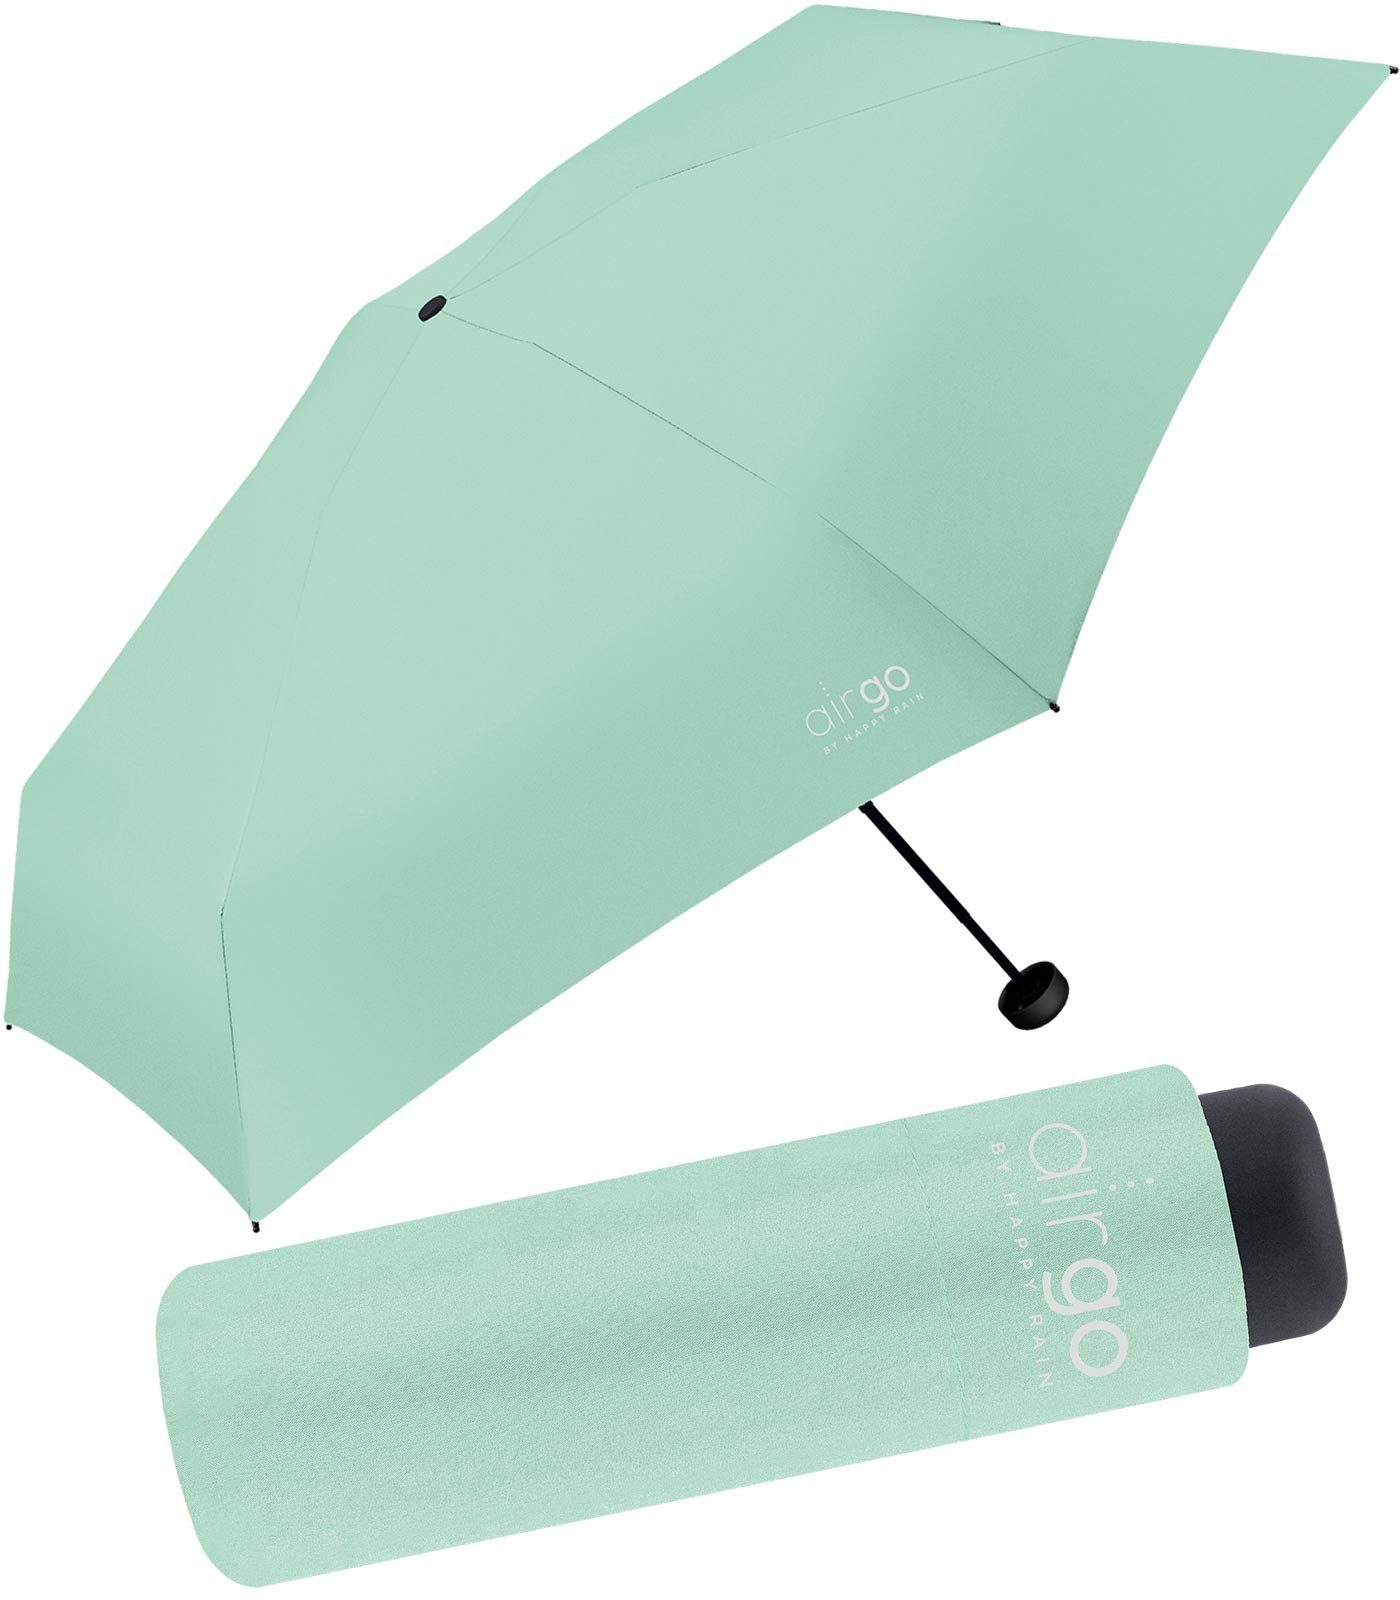 HAPPY RAIN Taschenregenschirm Air Go - 137 Gramm Supermini-Schirm superleicht, perfekt für die Handtasche und das Reisegepäck mint